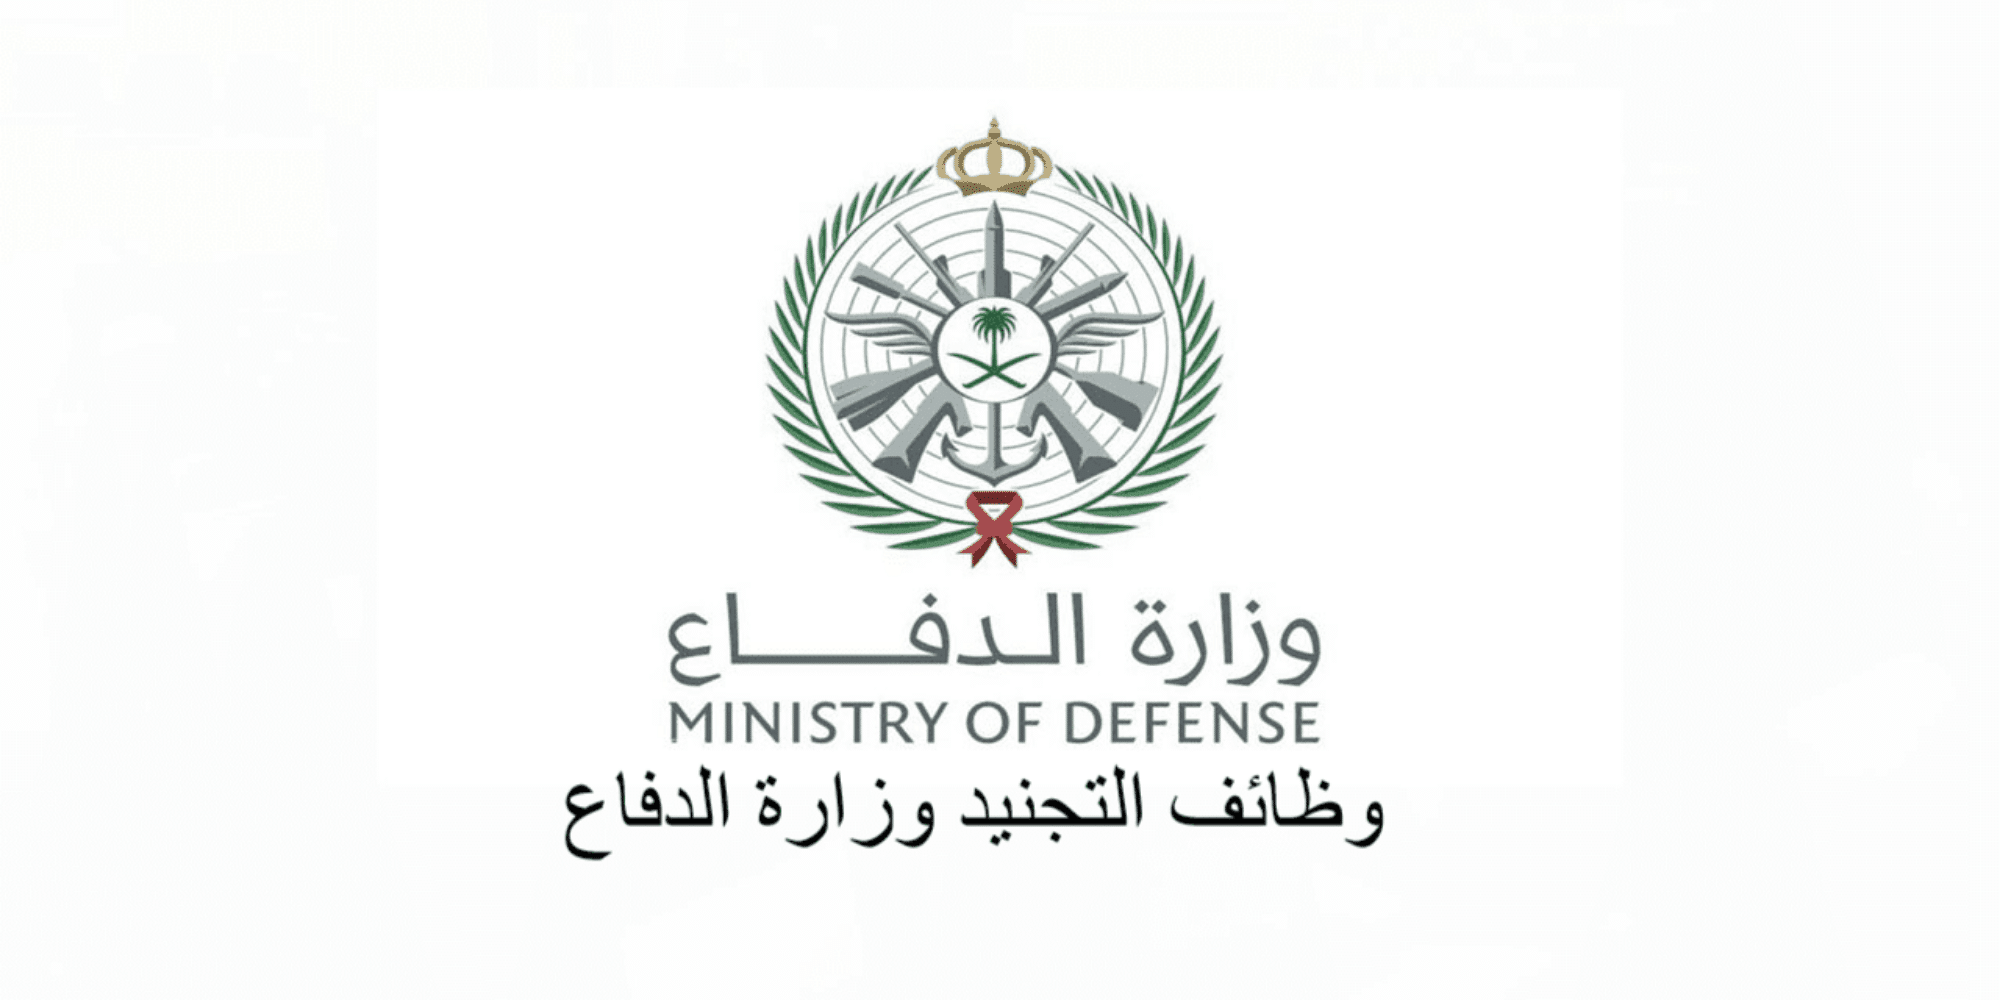 وظائف وزارة الدفاع السعودية لخريجي الجامعات